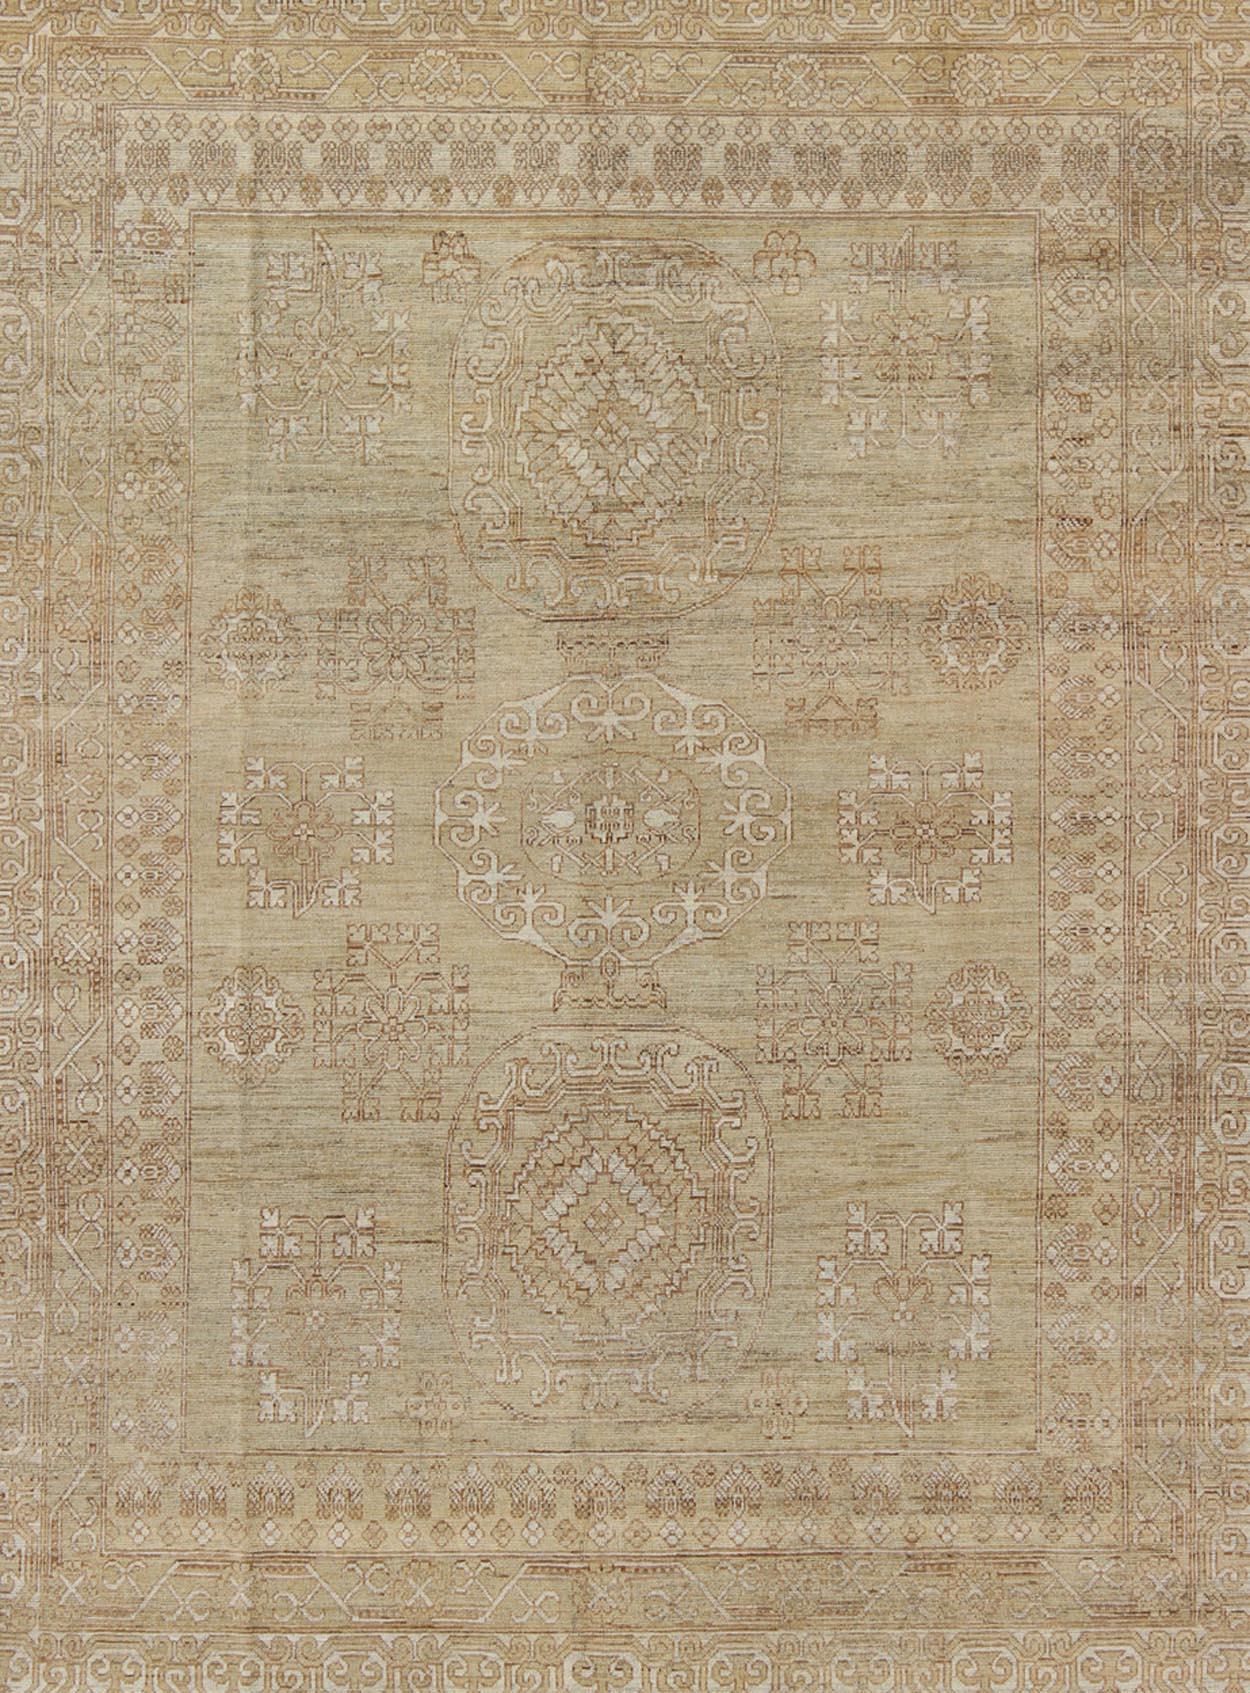 Khotan Design Teppich mit geometrischem All-Over-Muster in Hellbraun und Grün. Keivan Woven Arts / Teppich MP-1409-1446 Herkunftsland / Art: Afghanistan / Khotan.
Maße: 8'6 x 10'4
Dieser Khotan zeigt ein geometrisches Allover-Muster, das von einem